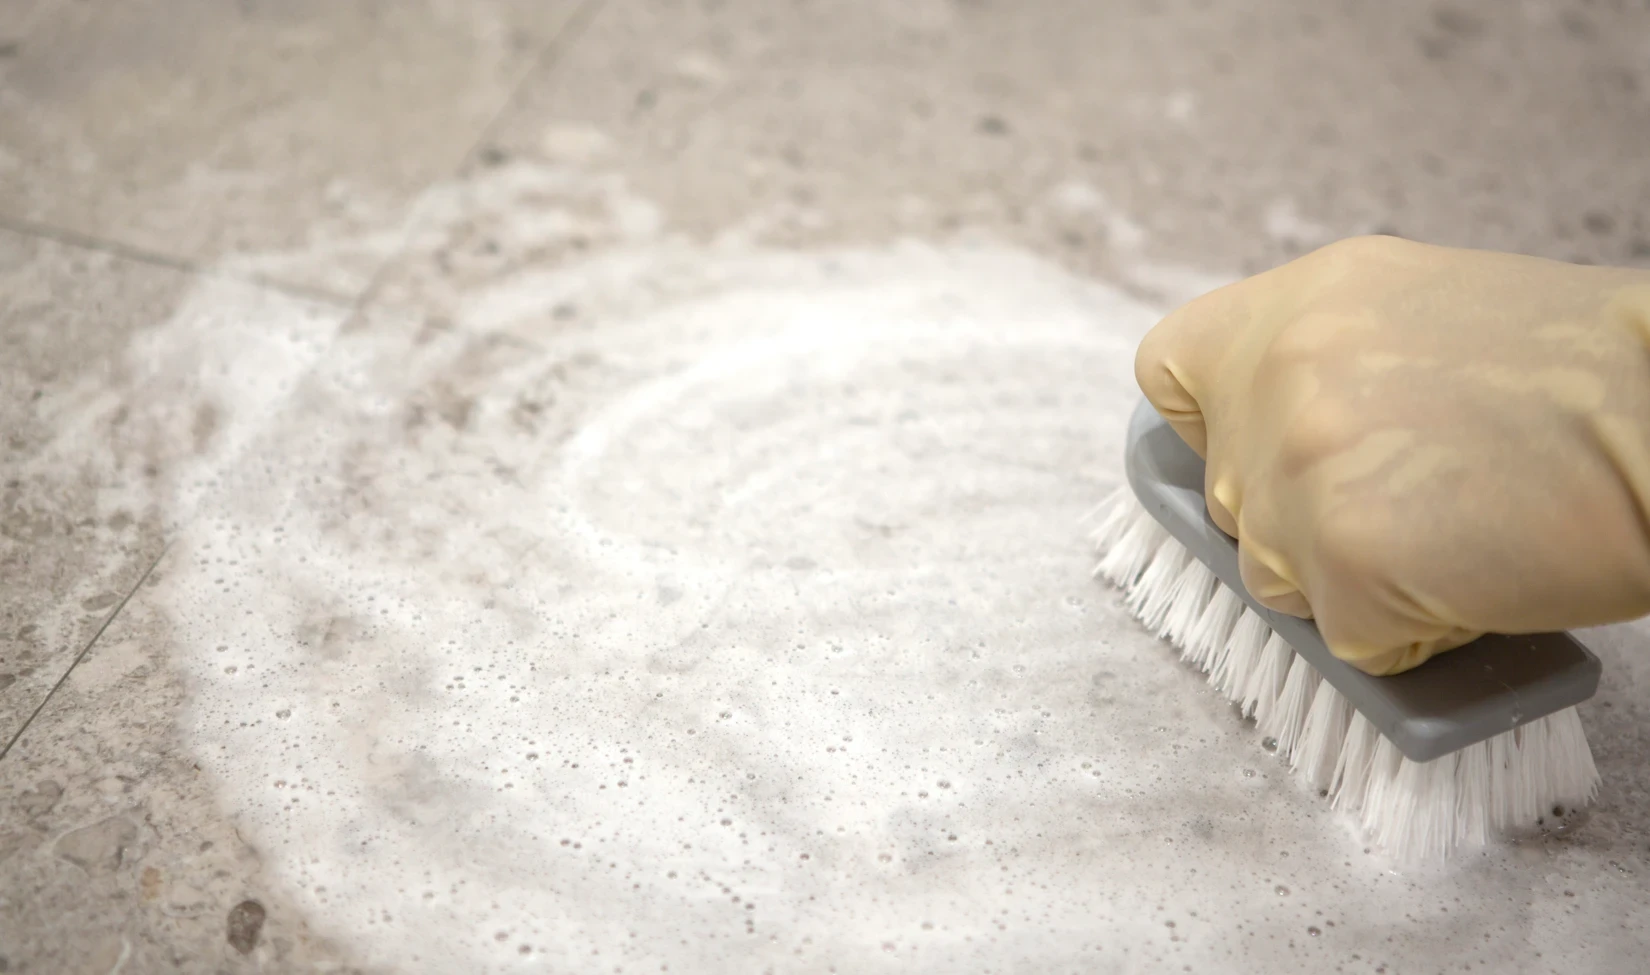 Mano con guante amarillo protector fregando suelo de gres porcelánico con detergente espumoso y cepillo, concepto de mantenimiento de suelos alicatados.